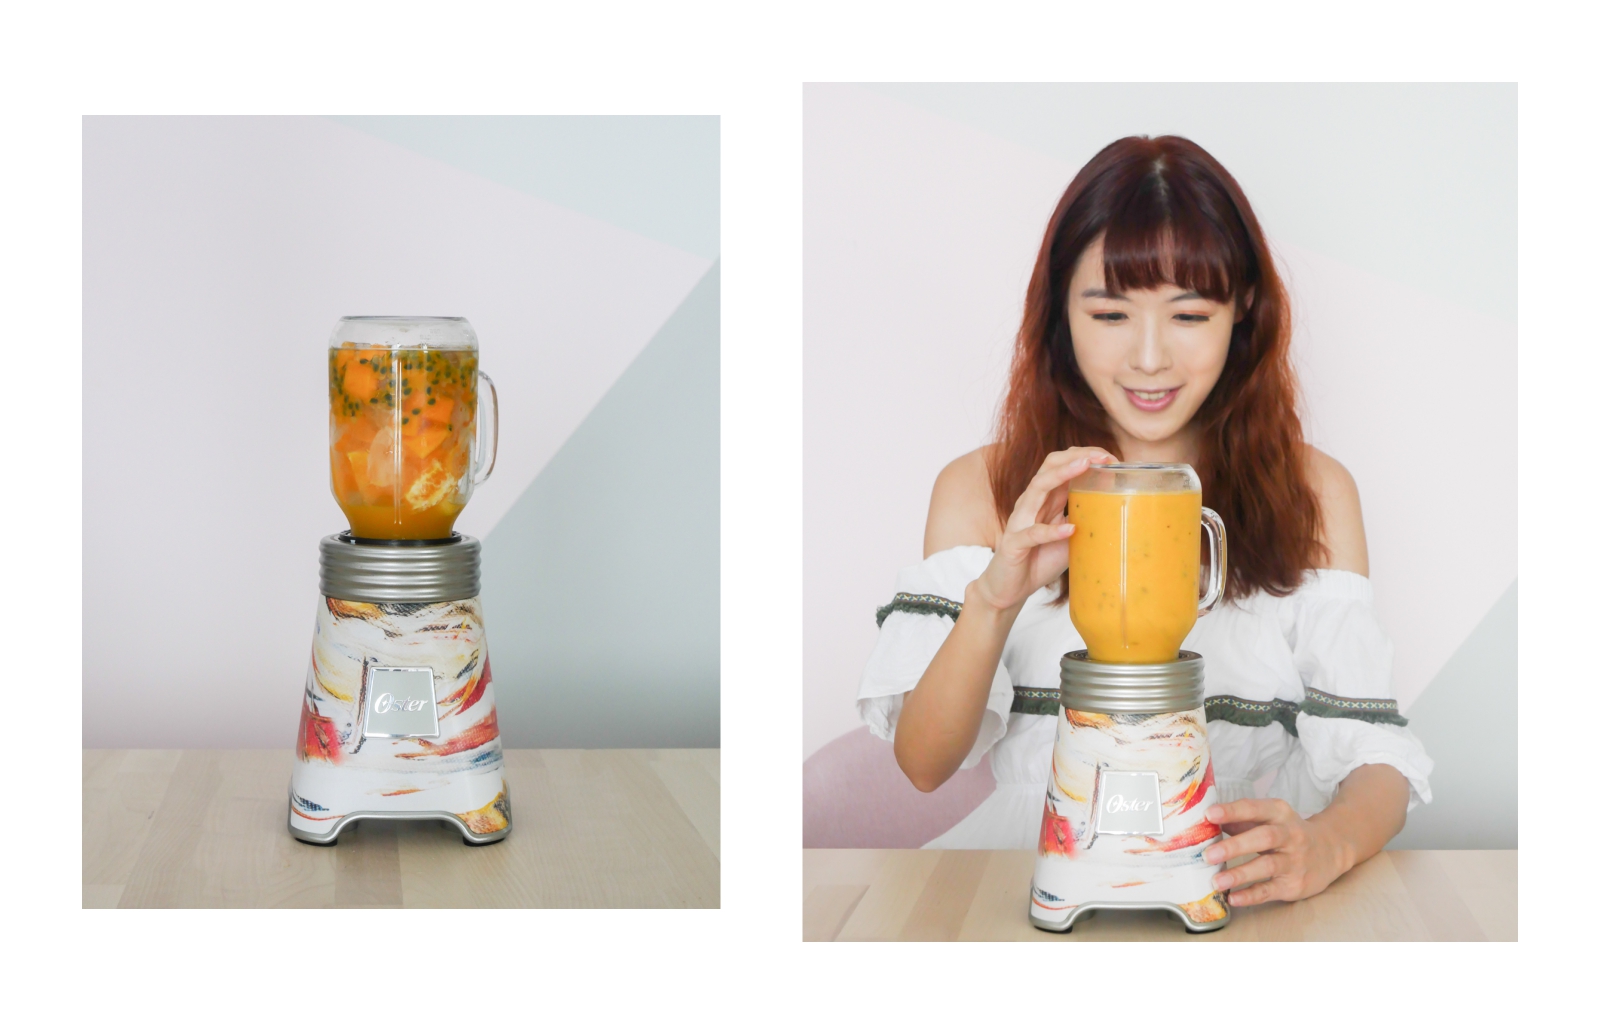 美國 Oster Ball Mason Jar 隨鮮瓶果汁機 台灣獨家新色上市 夏季果汁輕鬆帶著走